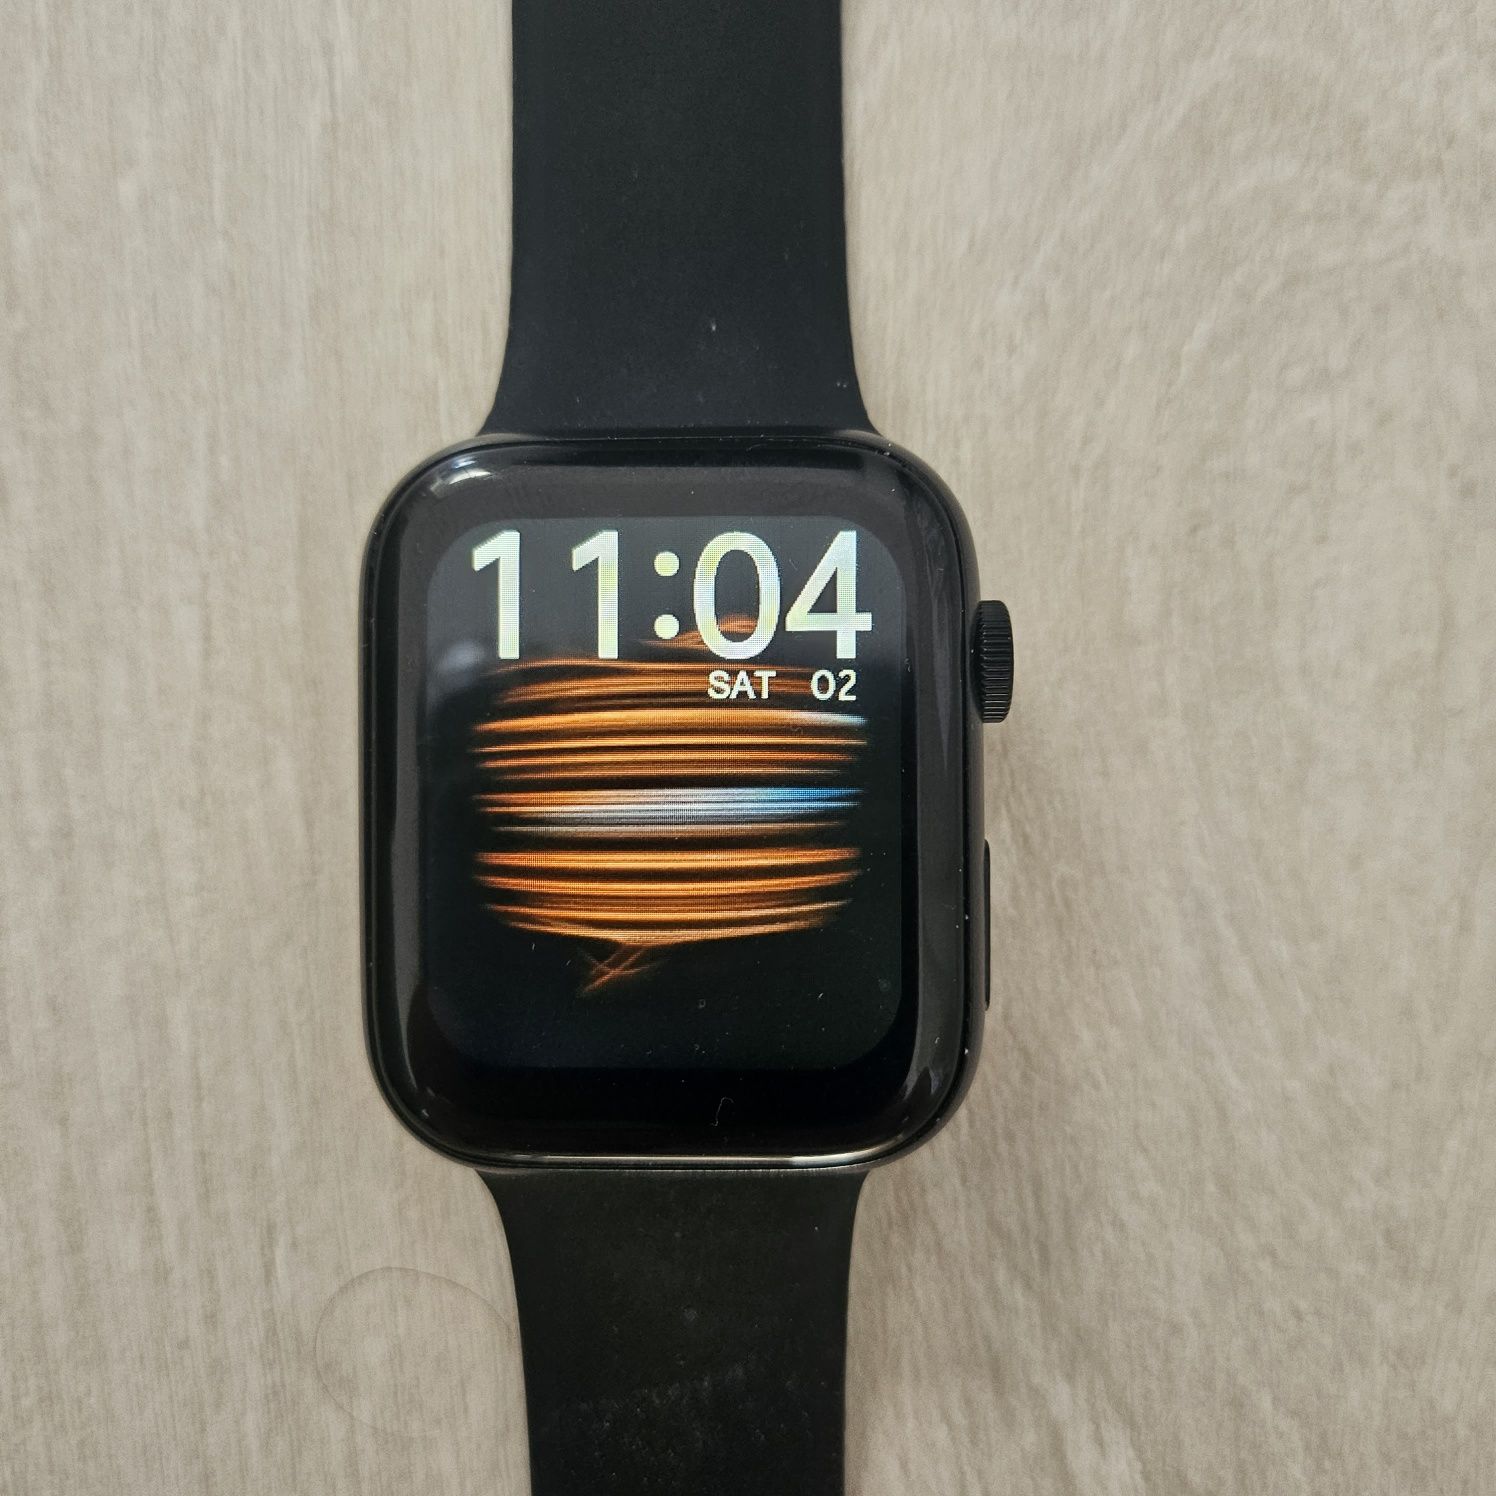 Smartwatch watchmark wi12